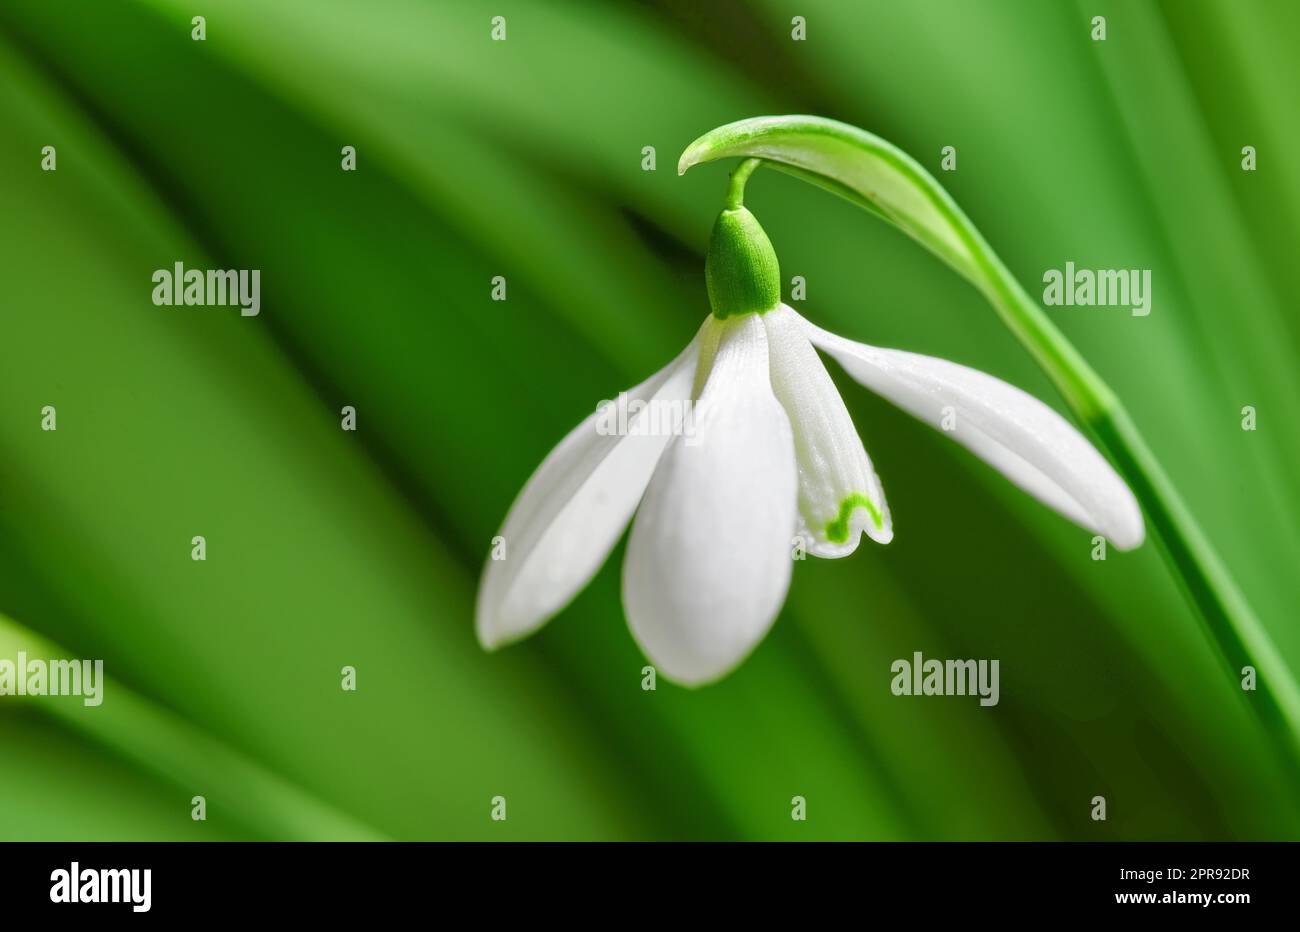 Nahaufnahme von reinweißen Schneetropfen oder galanthus-Blüten, die vor einem grünen Hintergrund blühen. Bulbus-, ganzjährige und krautige Pflanze aus der amaryllidaceae-Art, die in einem Garten im Freien gedeiht Stockfoto